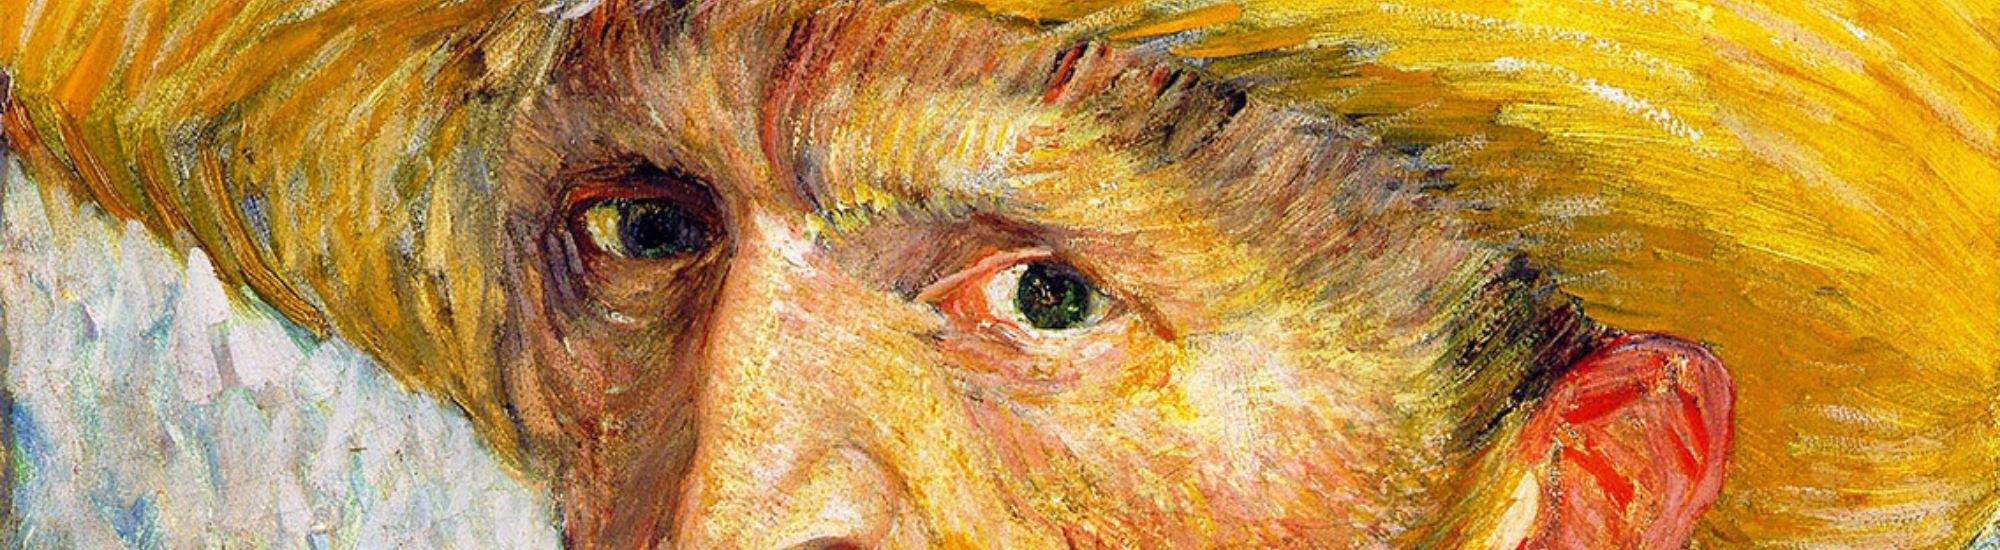 Multisensorisk Utställning av Van Gogh i Krakow: Ett Möte med Stor Konst